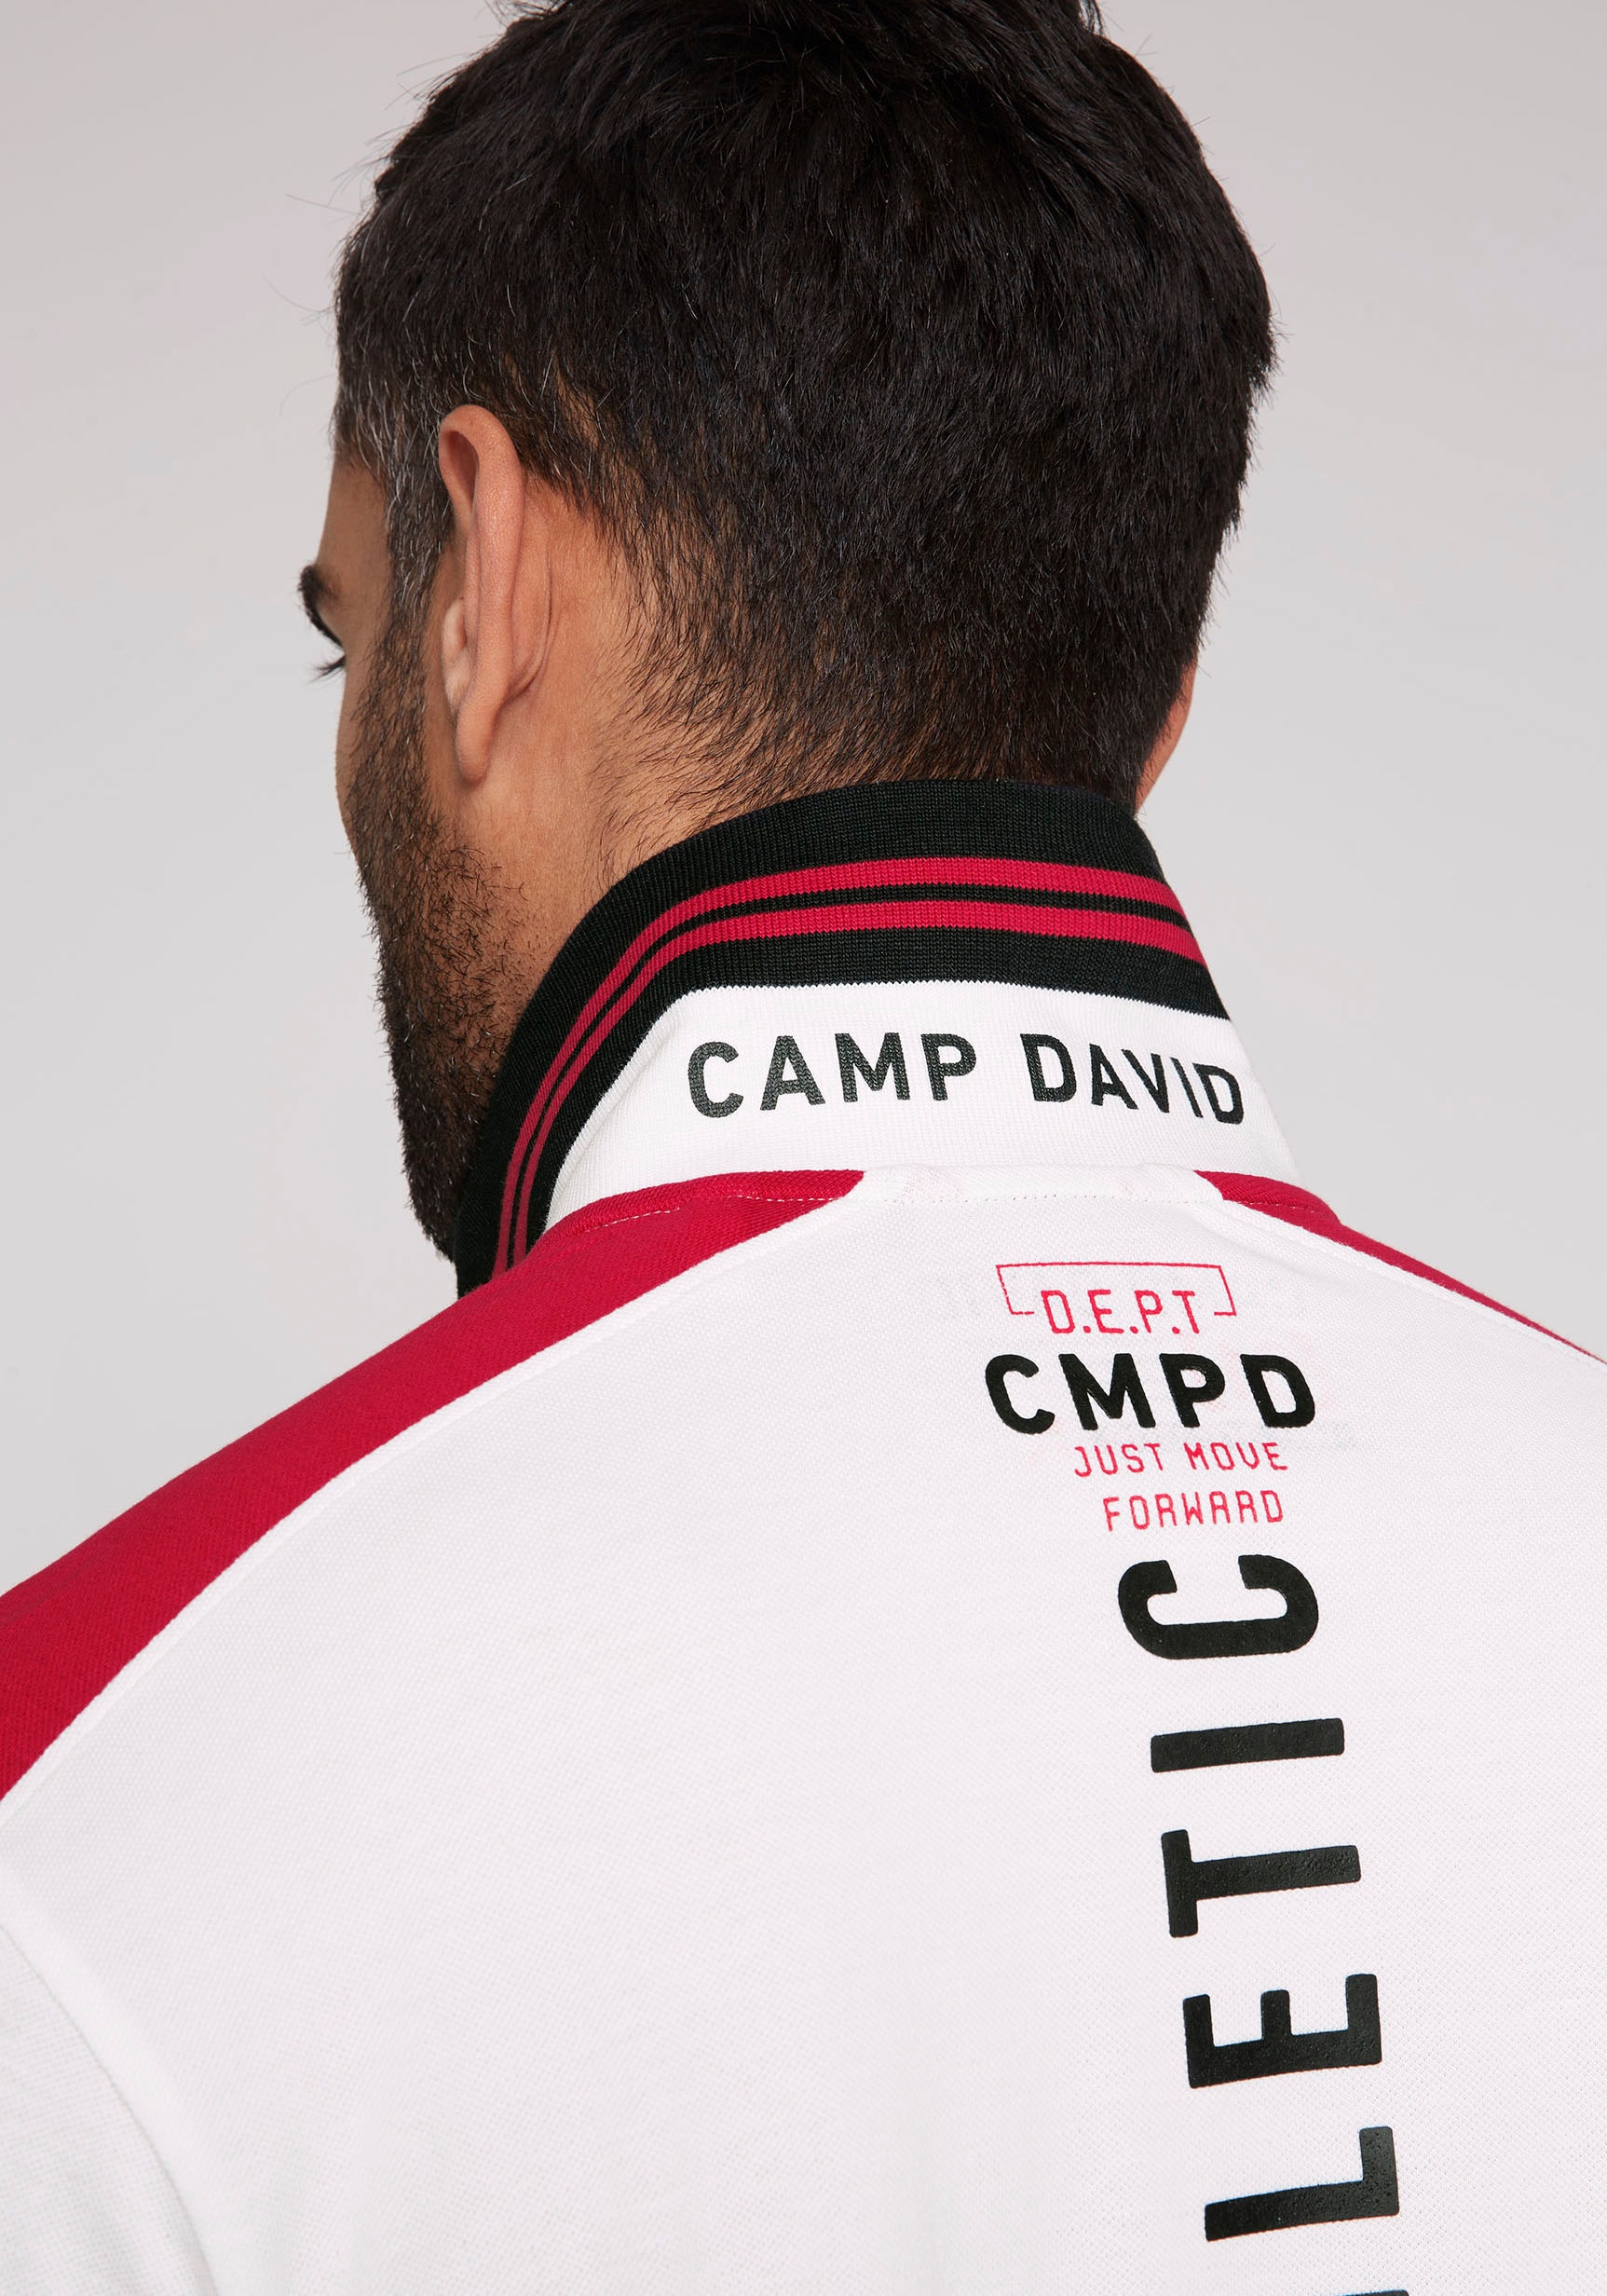 CAMP DAVID Poloshirt, mit Rubber Prints auf Ärmeln, Vorder- und Rückseite  online bestellen bei OTTO